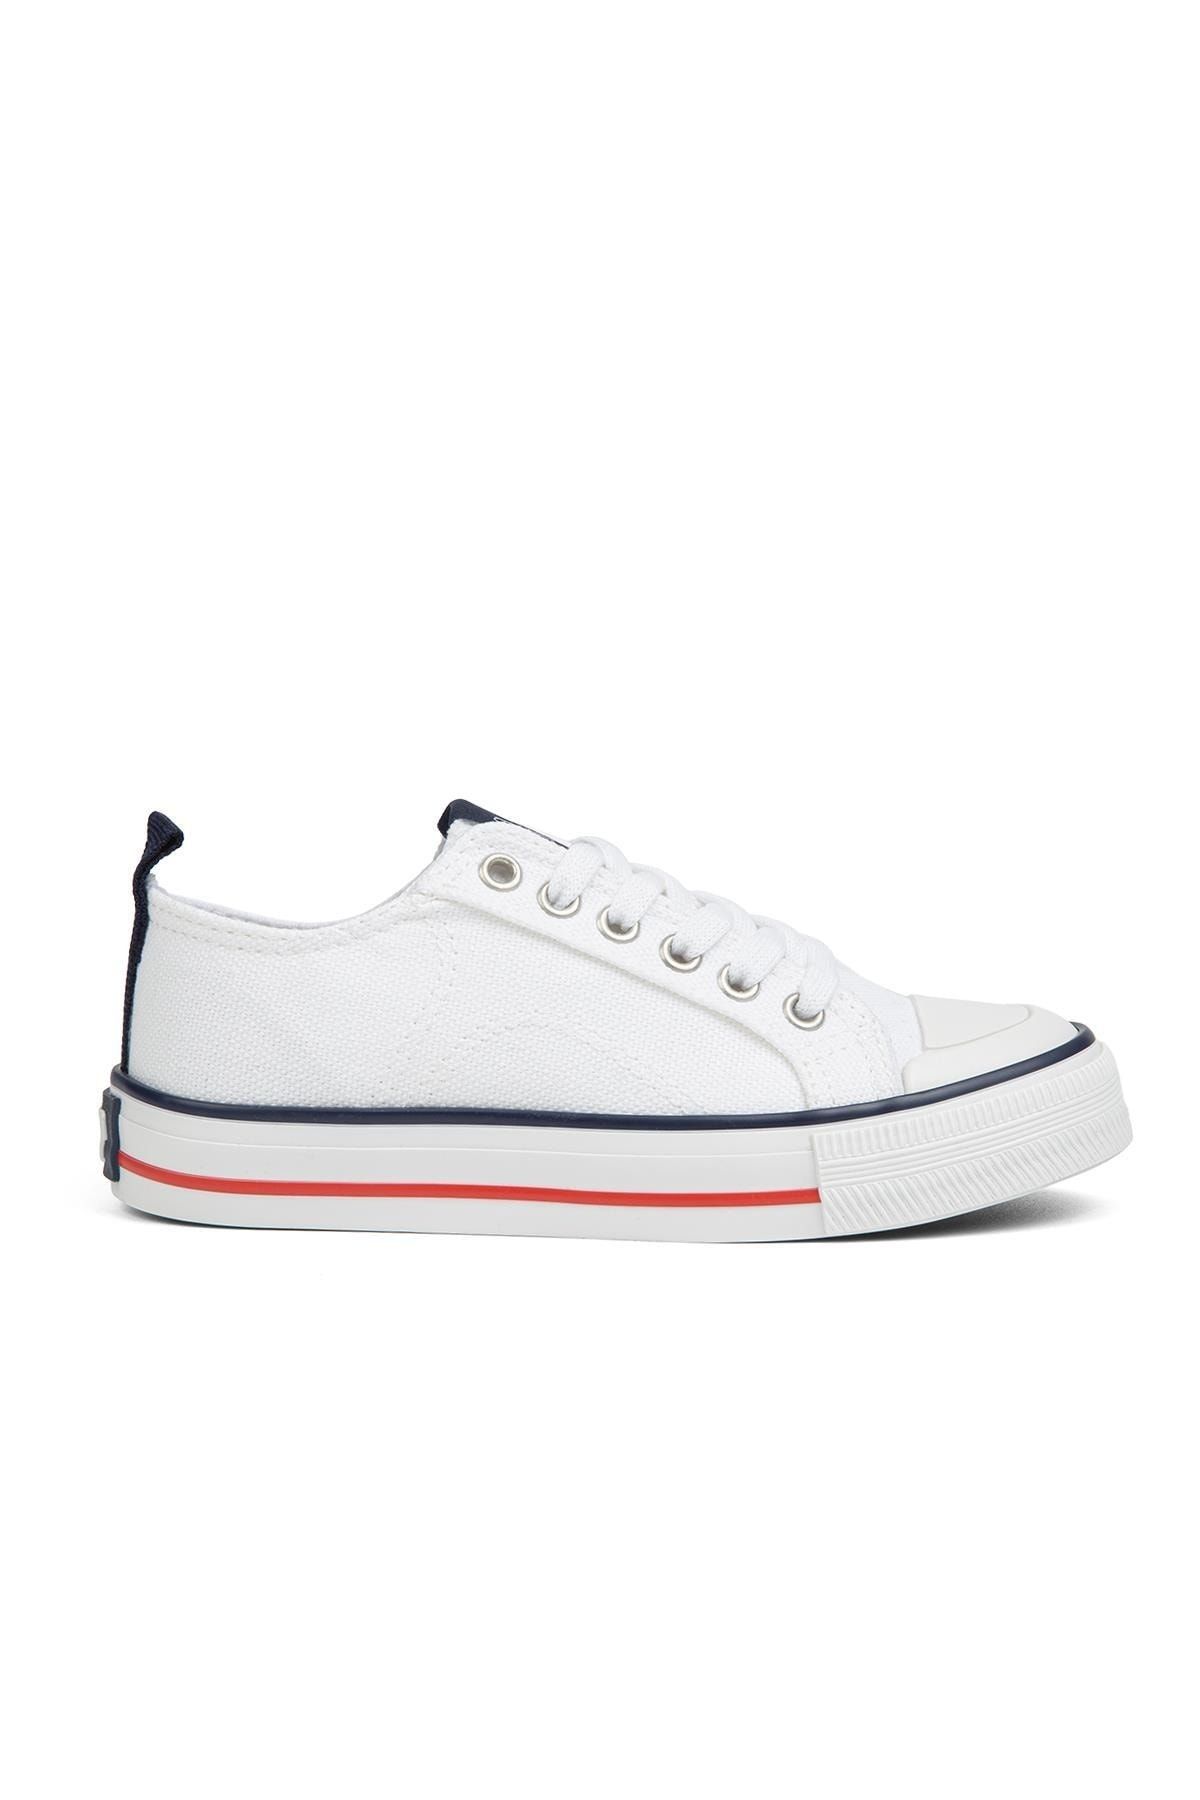 GAP | Gp-1088 Beyaz - Çocuk Spor Ayakkabı